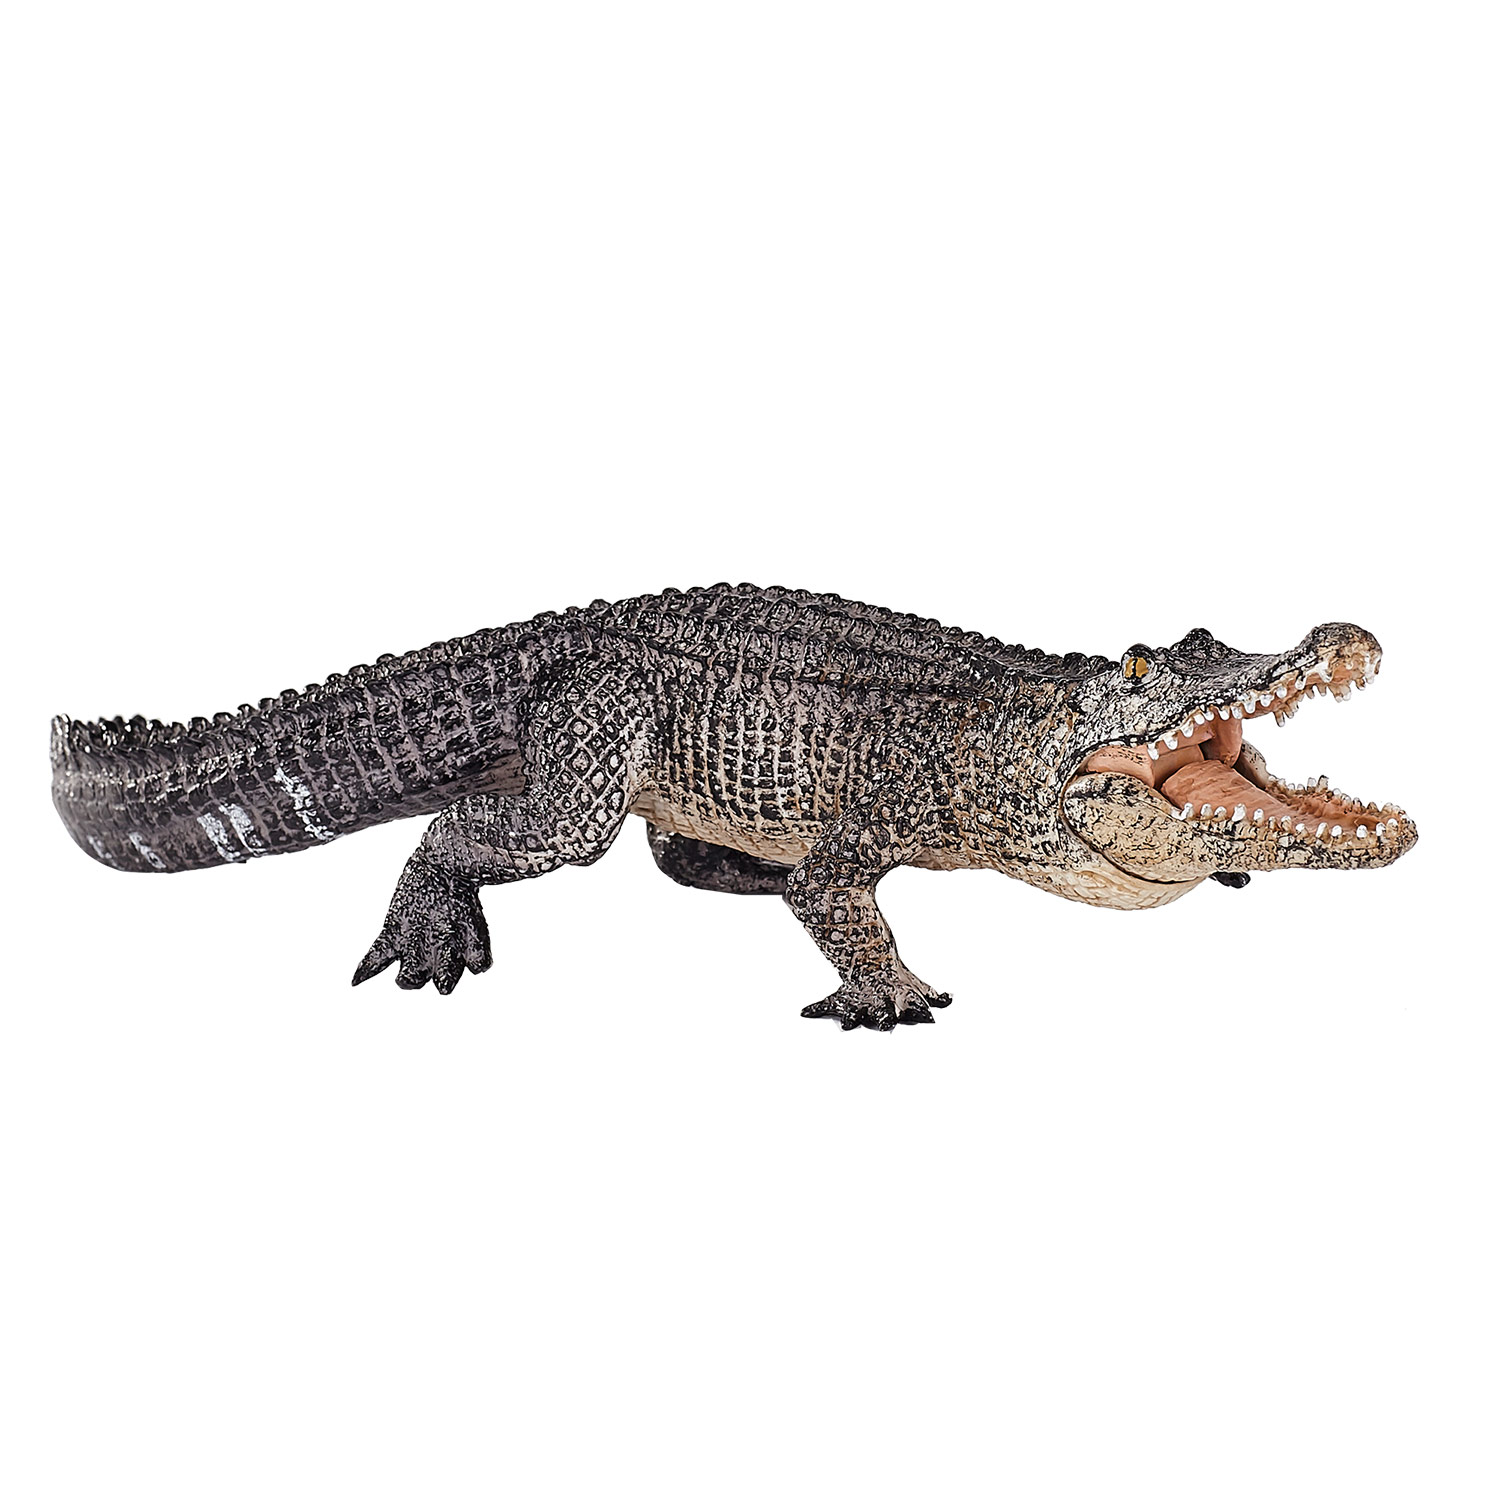 Mojo Wildlife Alligator avec mâchoire mobile - 387168